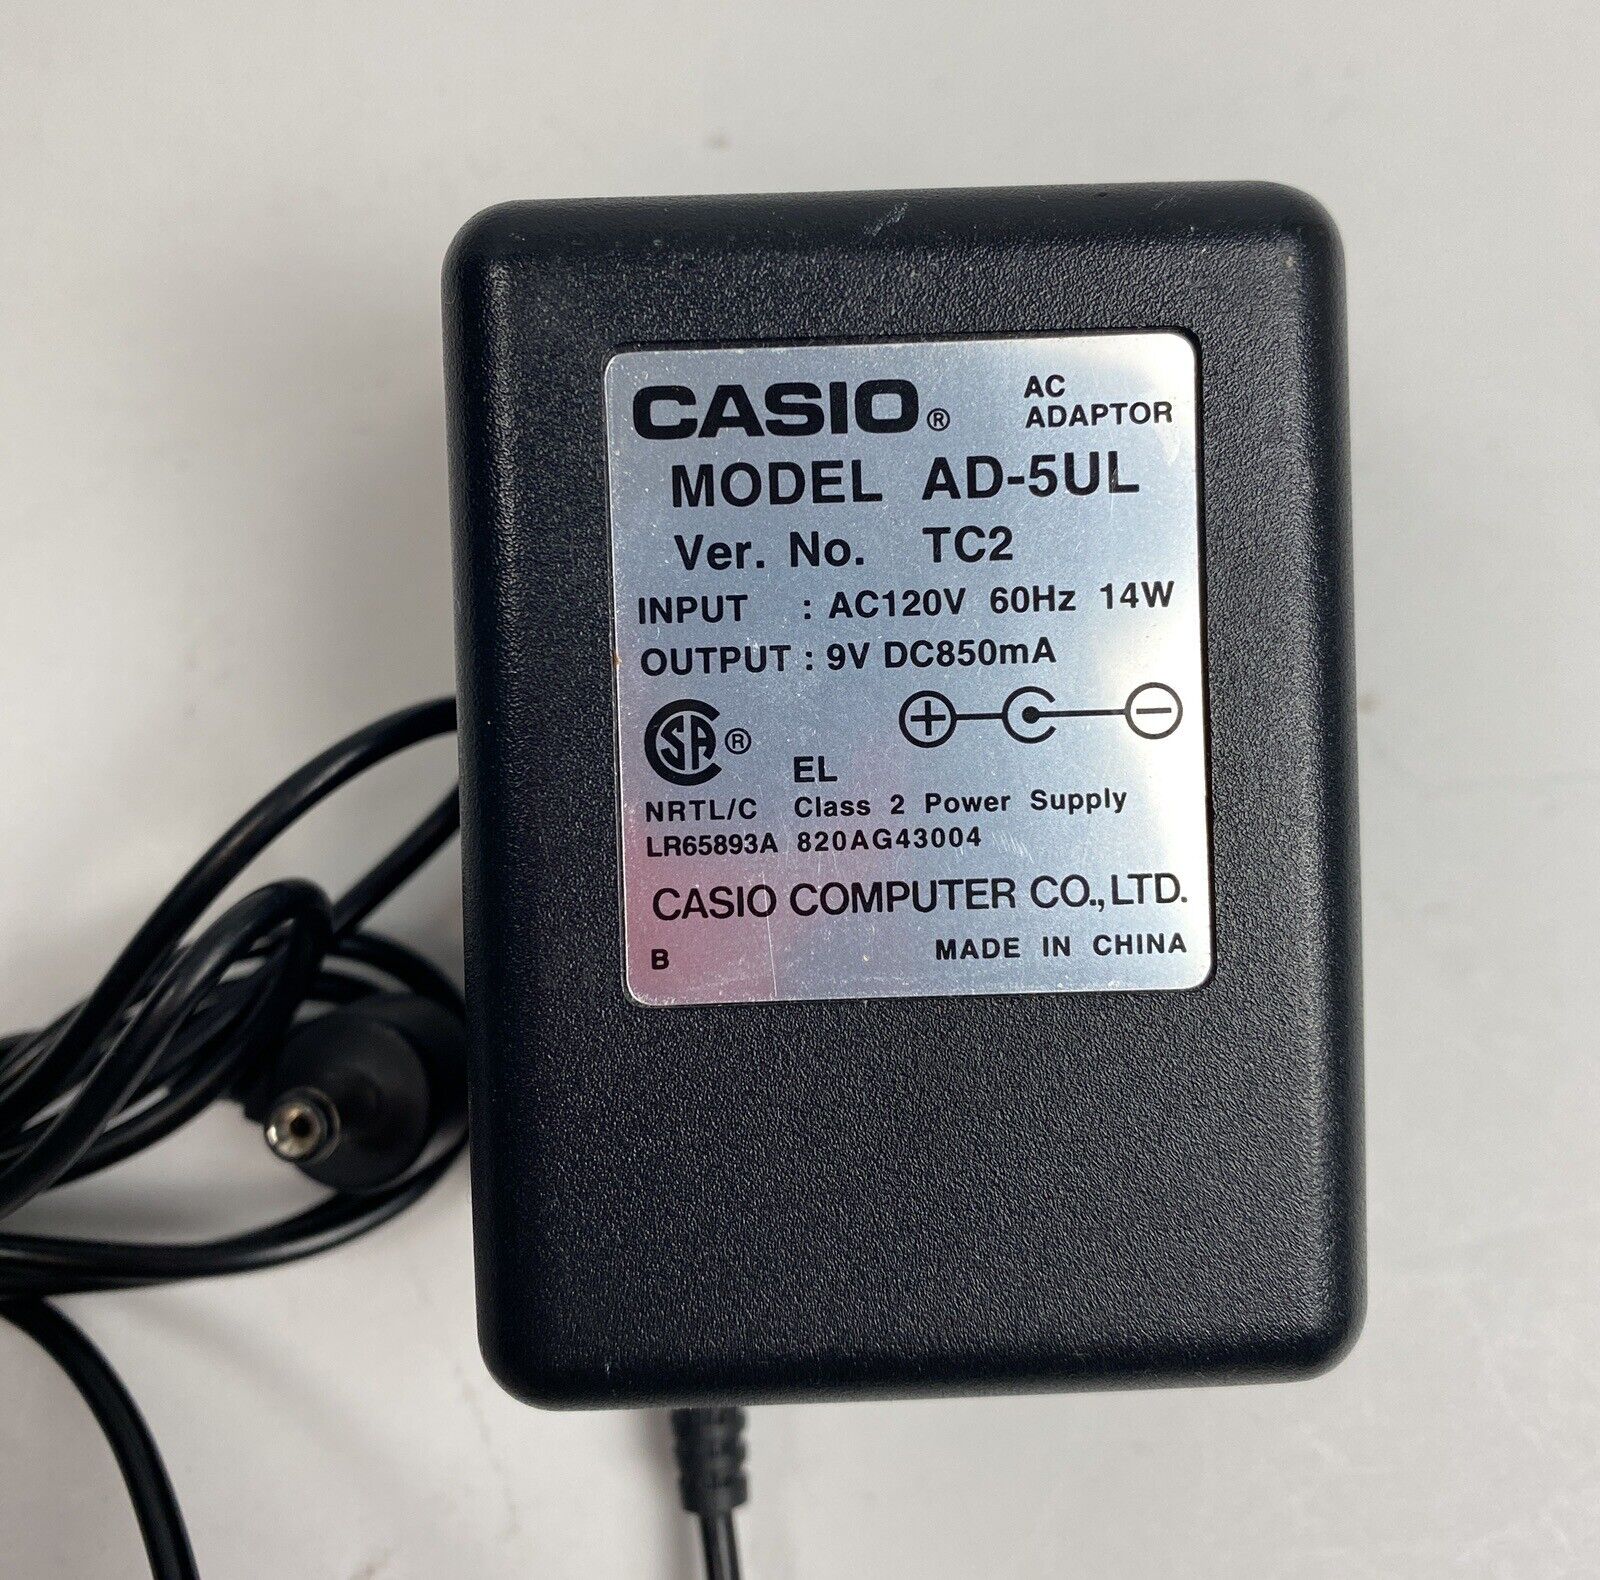 *Brand NEW*Genuine Original Casio AD-5UL 9V DC850mA AC Adapter Center Negative Power Supply